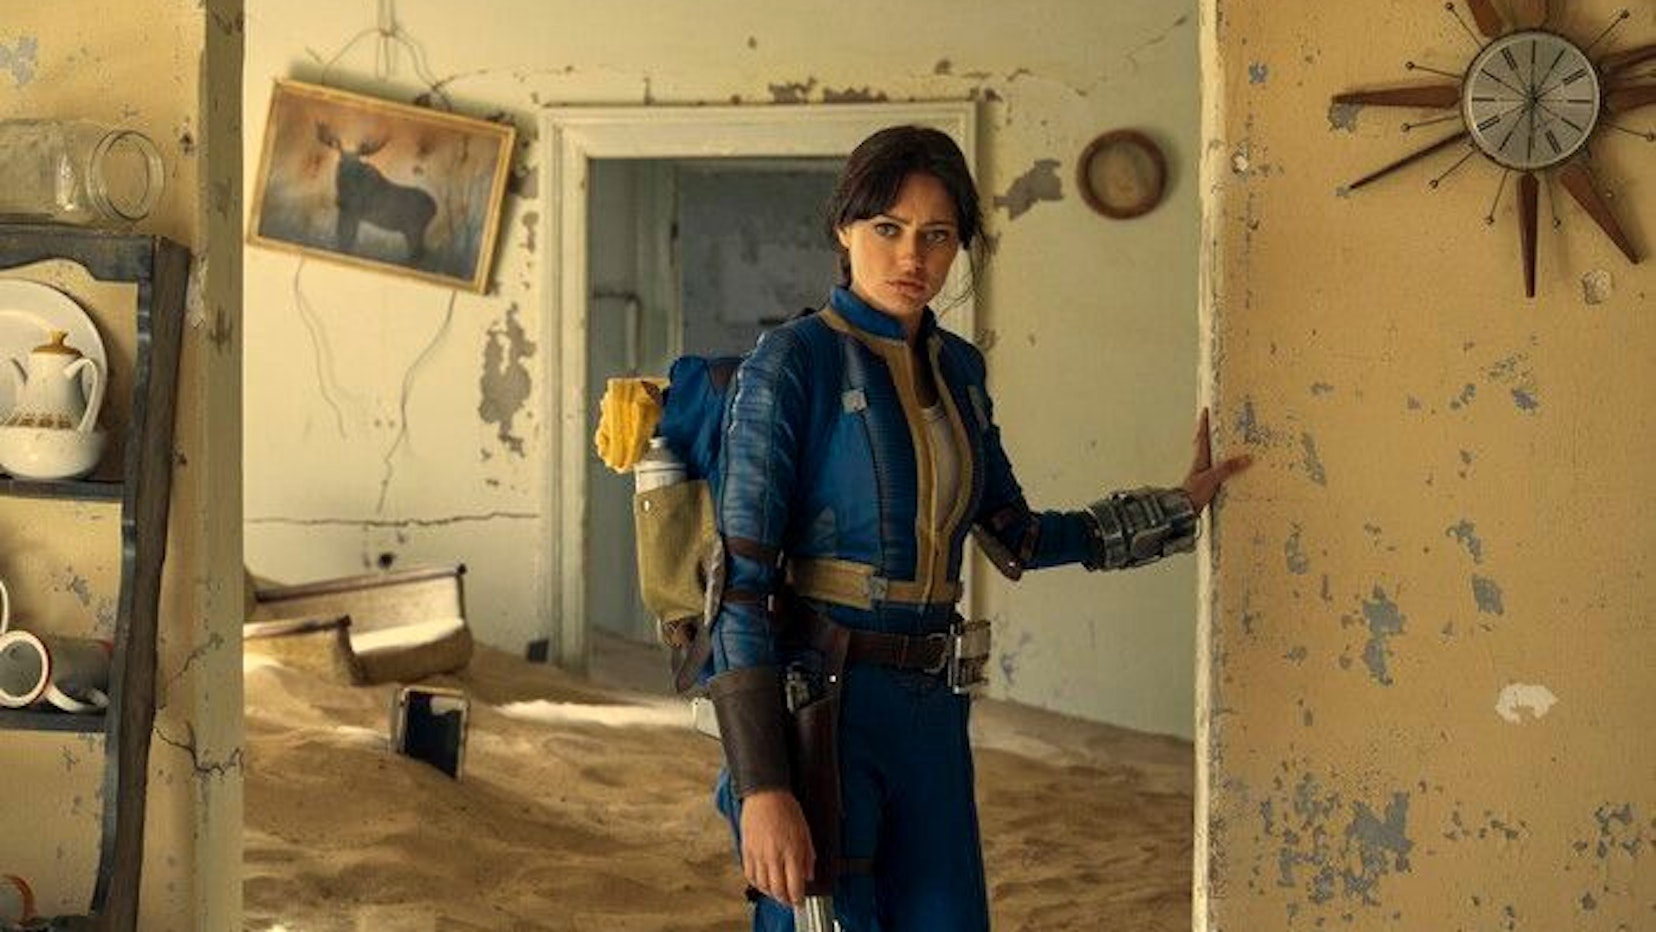 Lucy trägt einen blauen Overall mit gelben Akzenten. Sie lehnt sich im zerstörten inneren eines verwitterten Hauses mit der Hand an eine Wand.